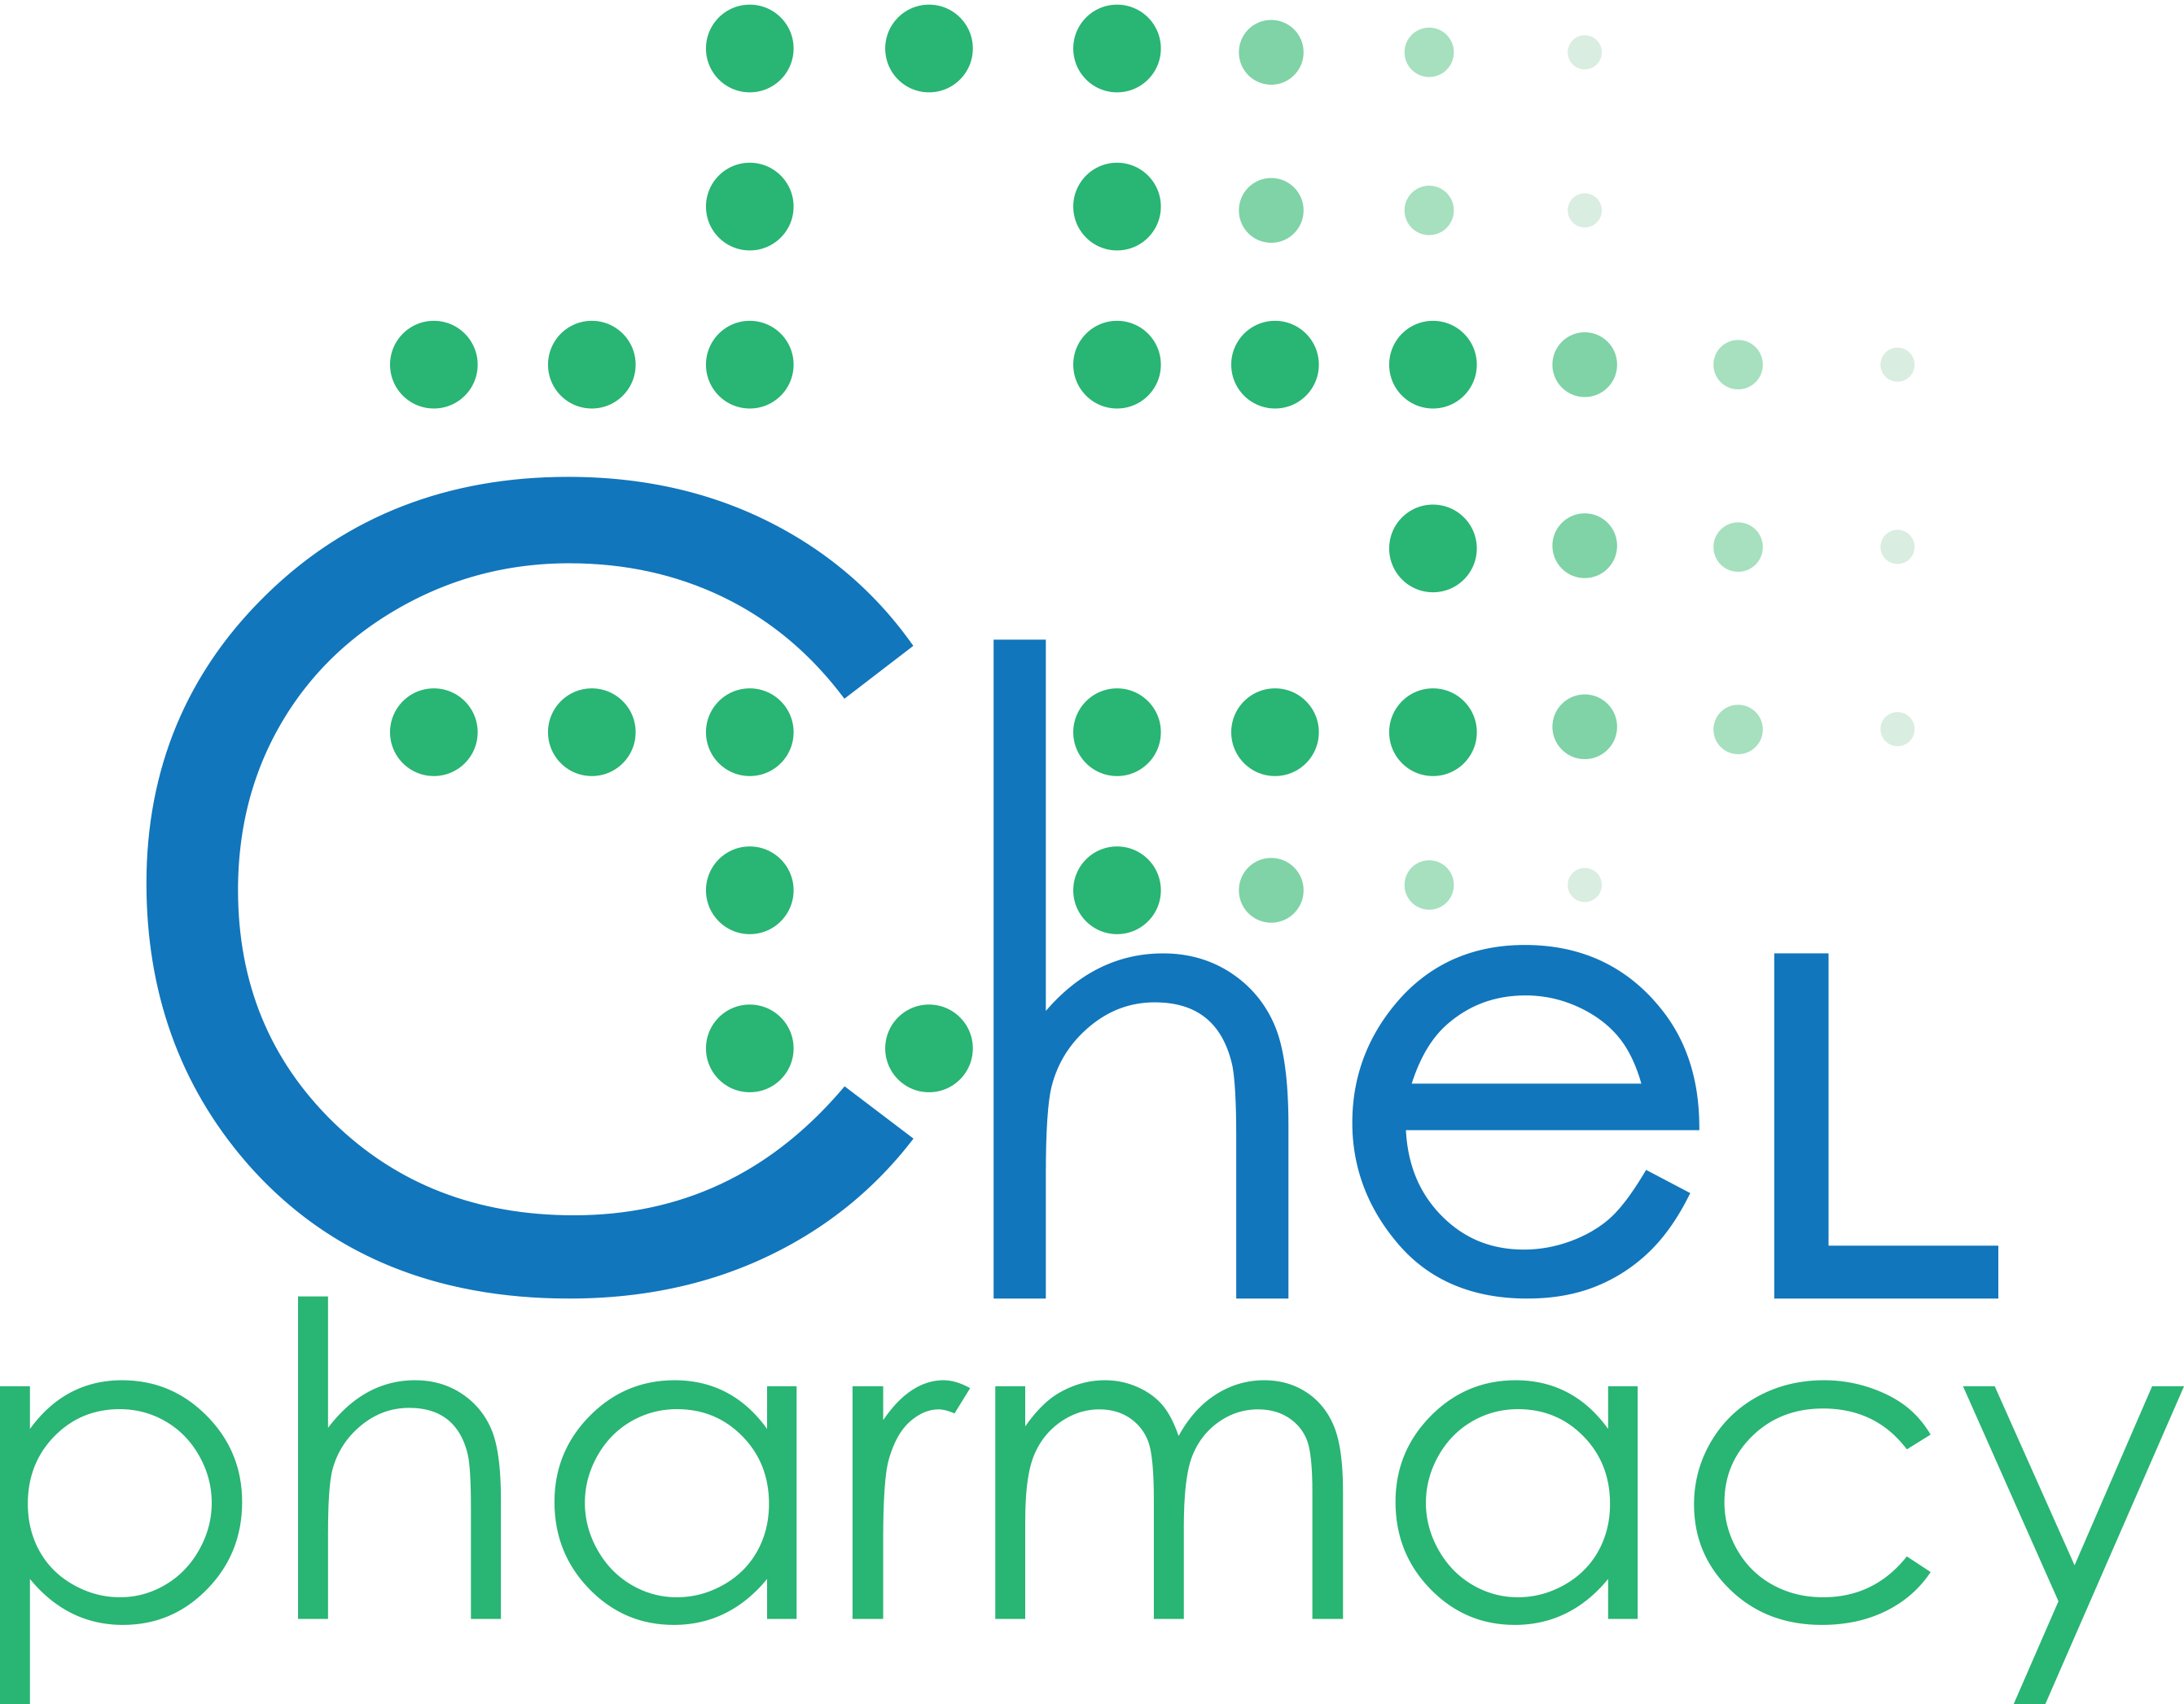 Chel Pharmacy